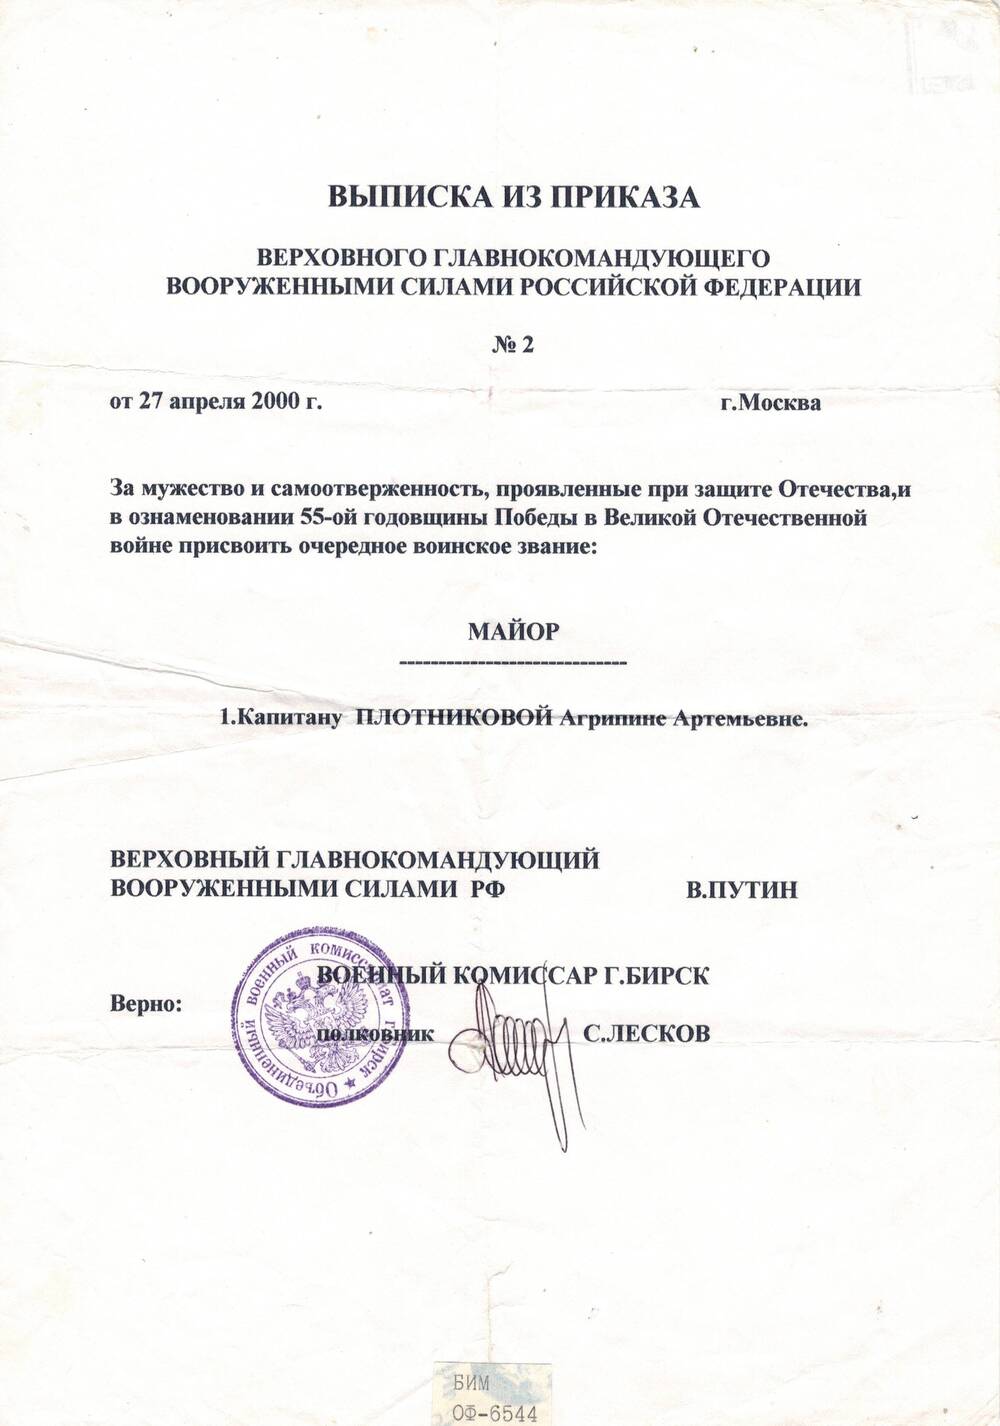 Документ - выписка из приказа верховного главнокомандующего вооруженными силами РФ о присвоении очередного воинского звания